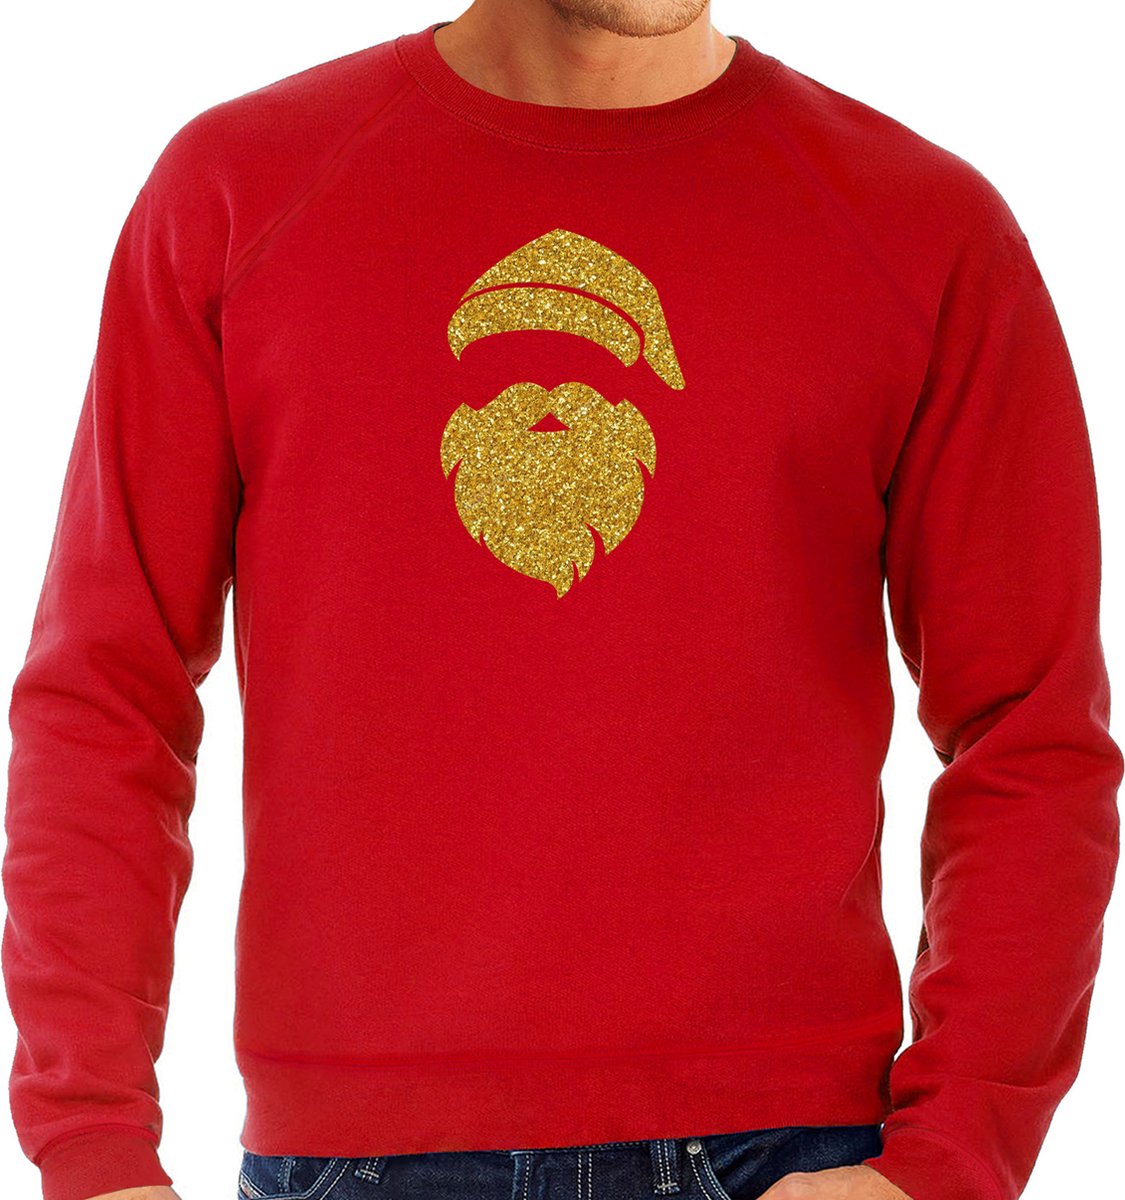 Kerstman hoofd Kerst trui - rood met gouden glitter bedrukking - heren - Kerst sweaters / Kerst outfit M